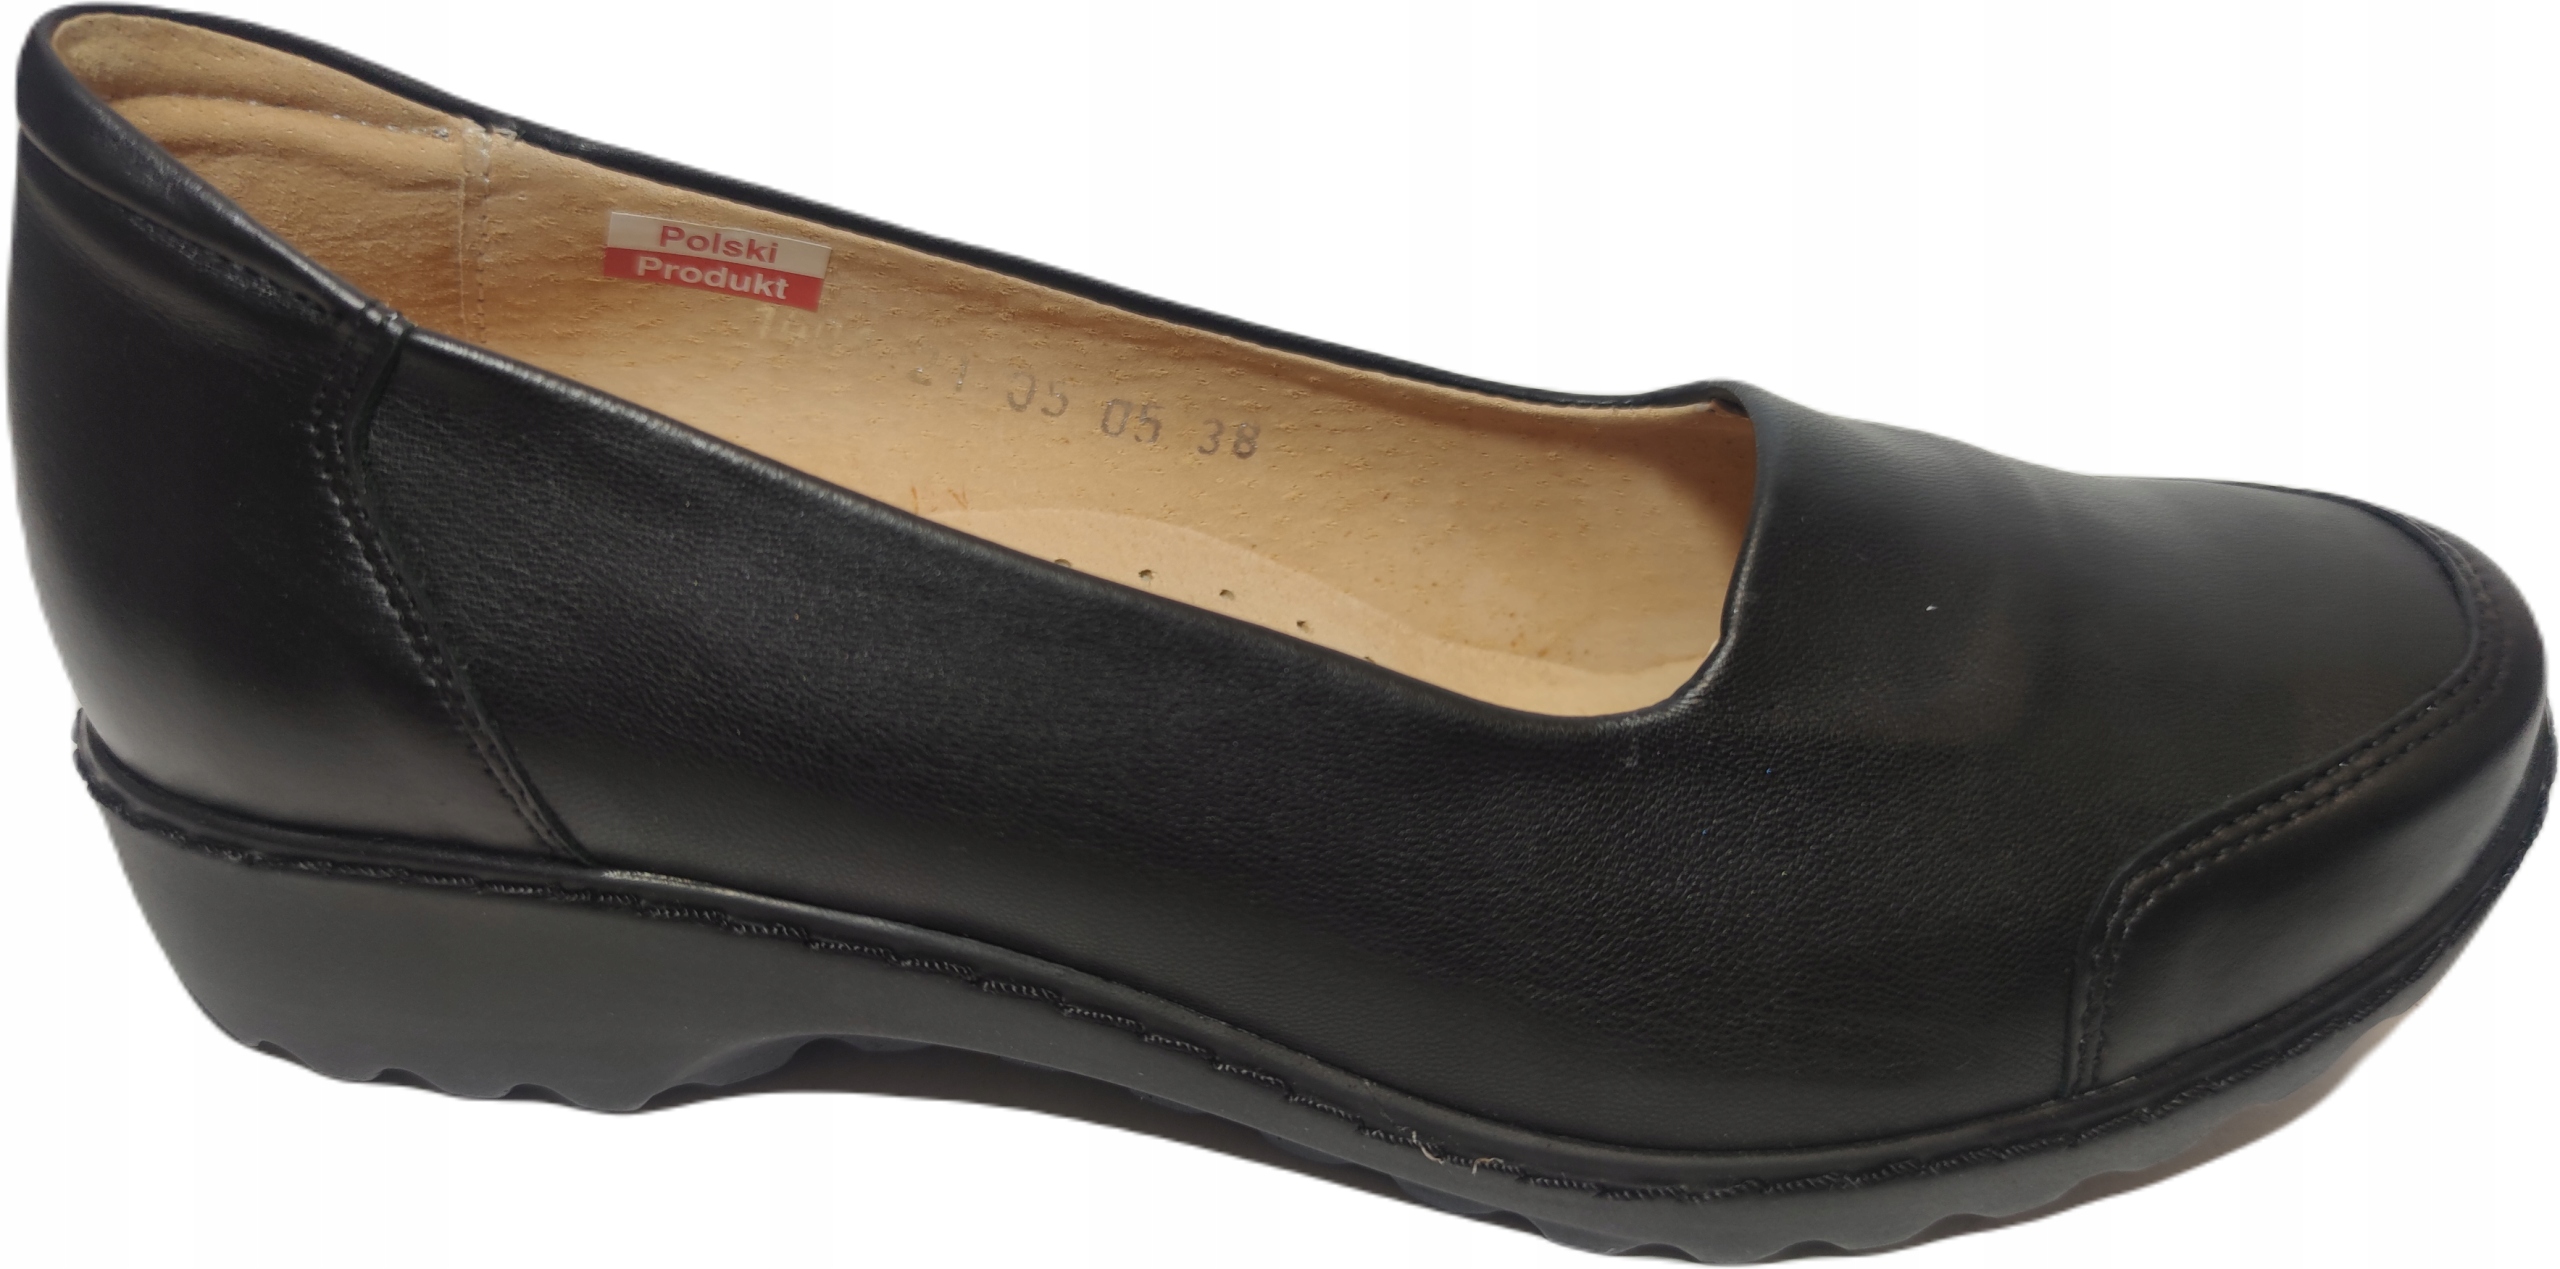 Zdravotná obuv profil AXEL 1401 koža čierna r37